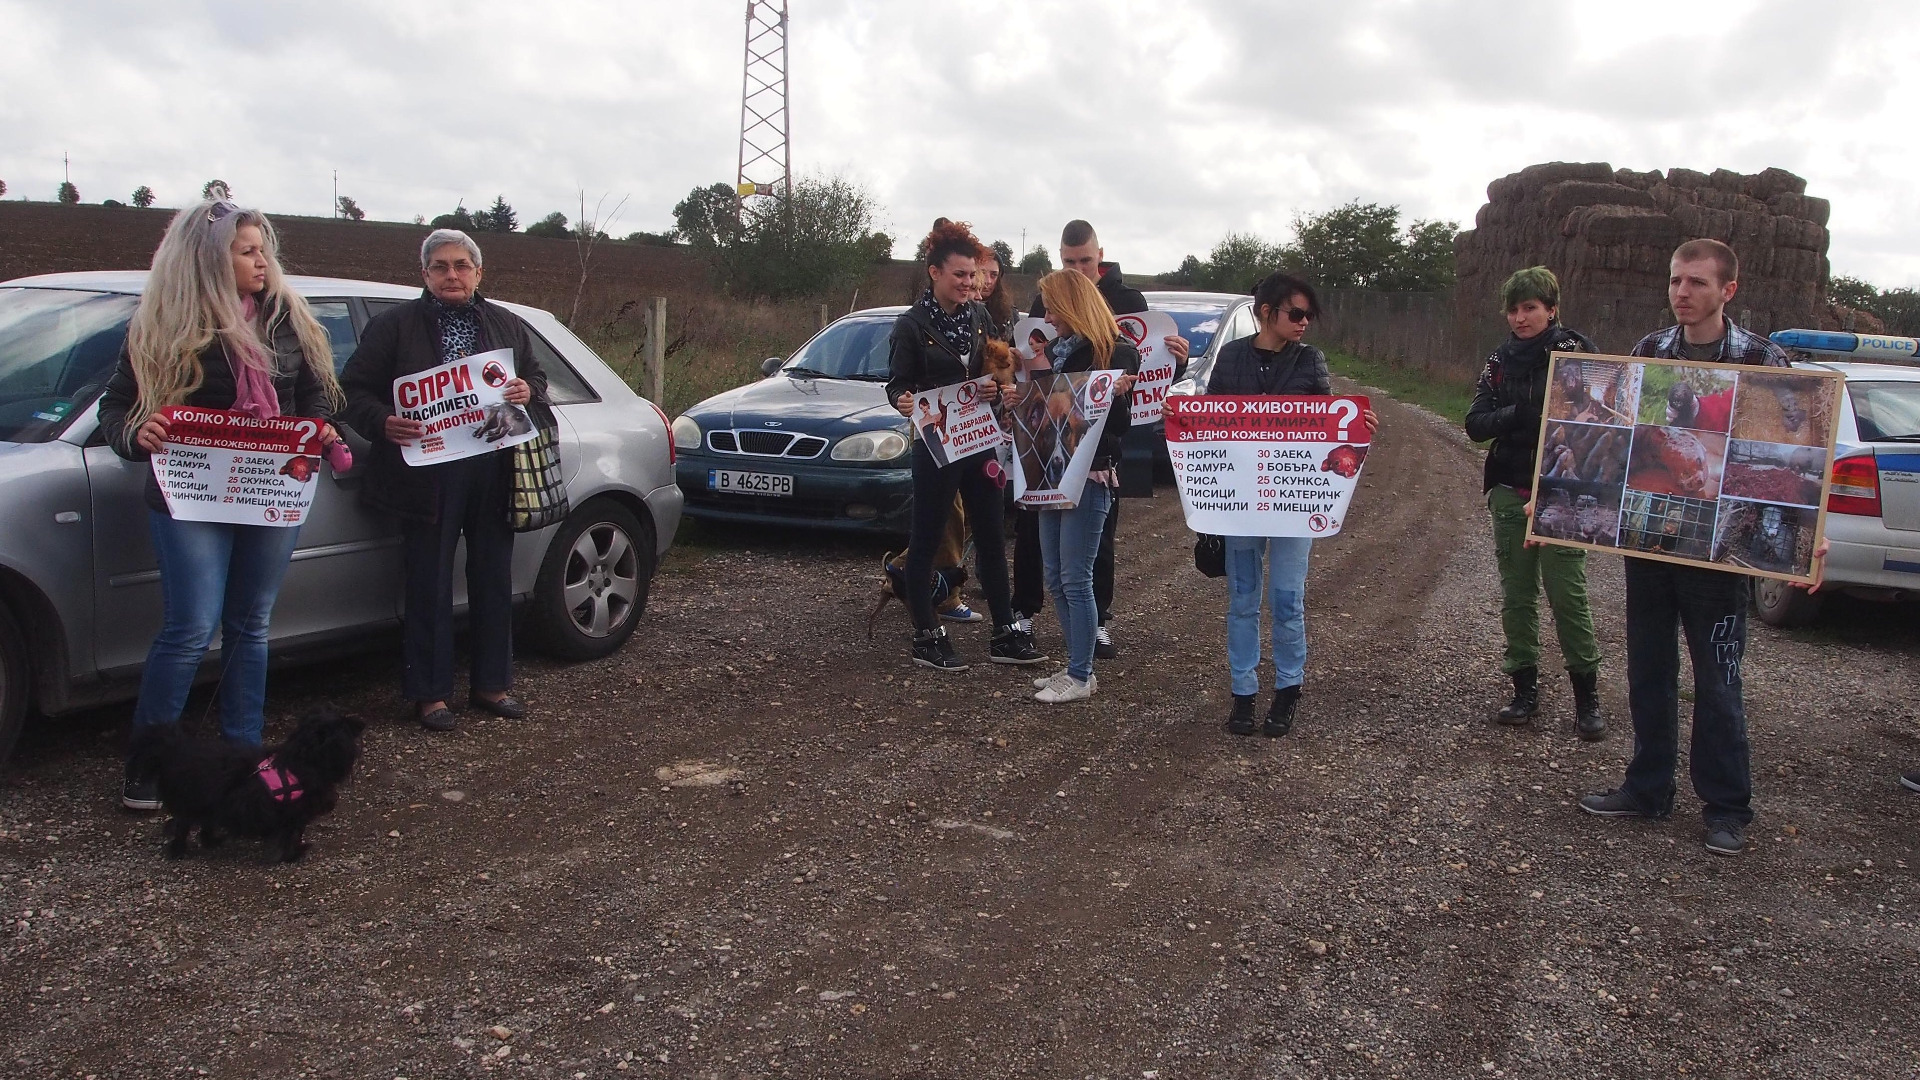 Граждански организации се събират на протест пред фермата за норки